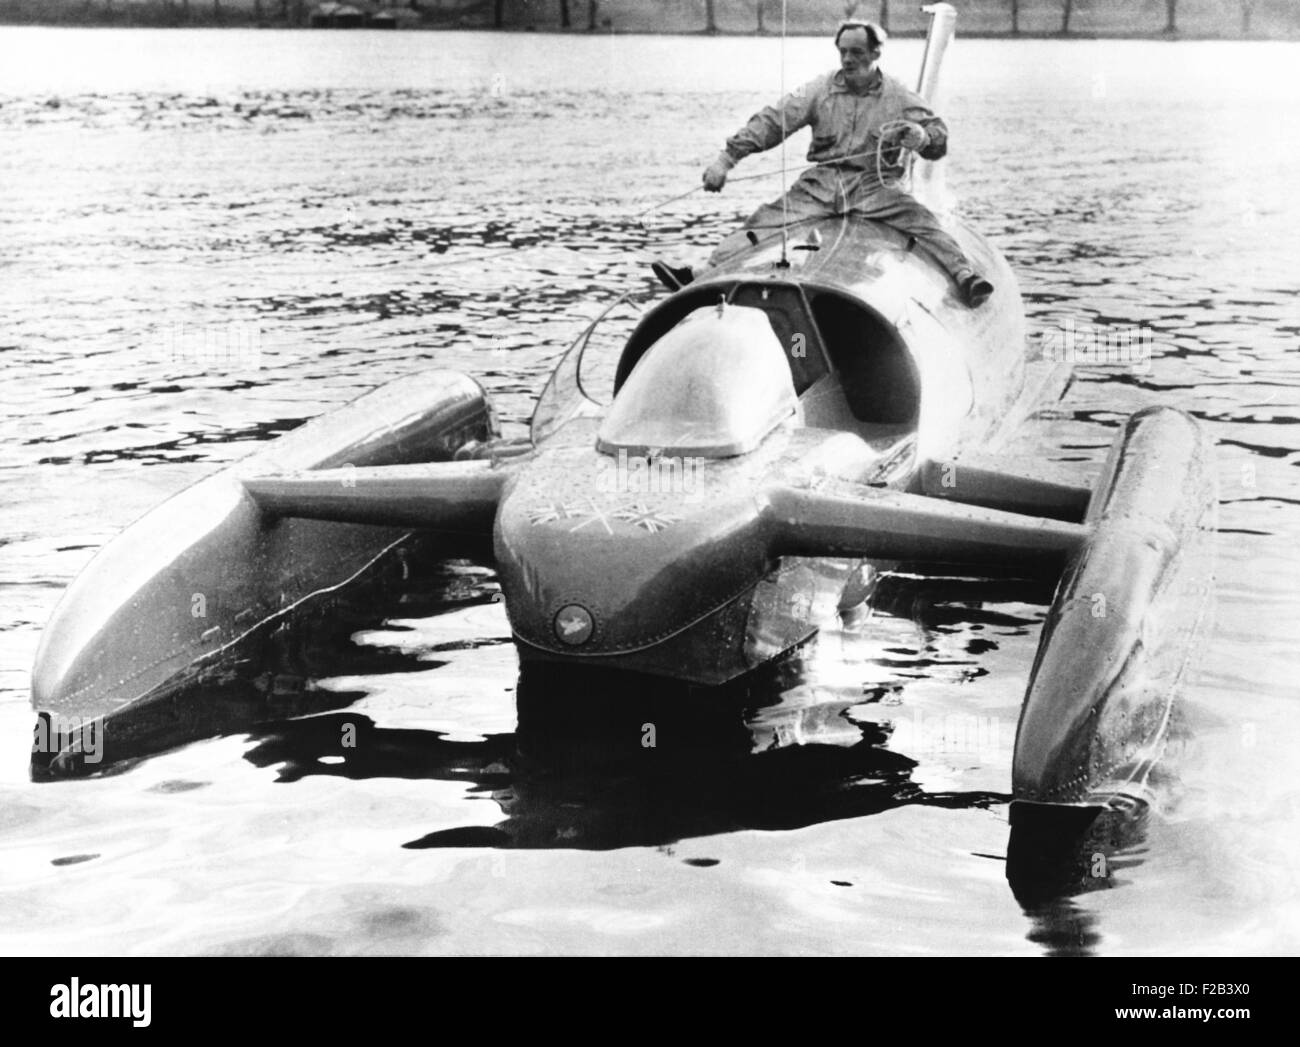 Donald Campbell si siede a cavallo del suo jet-powered barca, Bluebird K7, sul lago di Coniston. Egli tenterà di rompere i suoi due anni di acqua il record di velocità di 276.33 km/h. Nov. 22, 1962 - (CSU 2015 5 18) Foto Stock